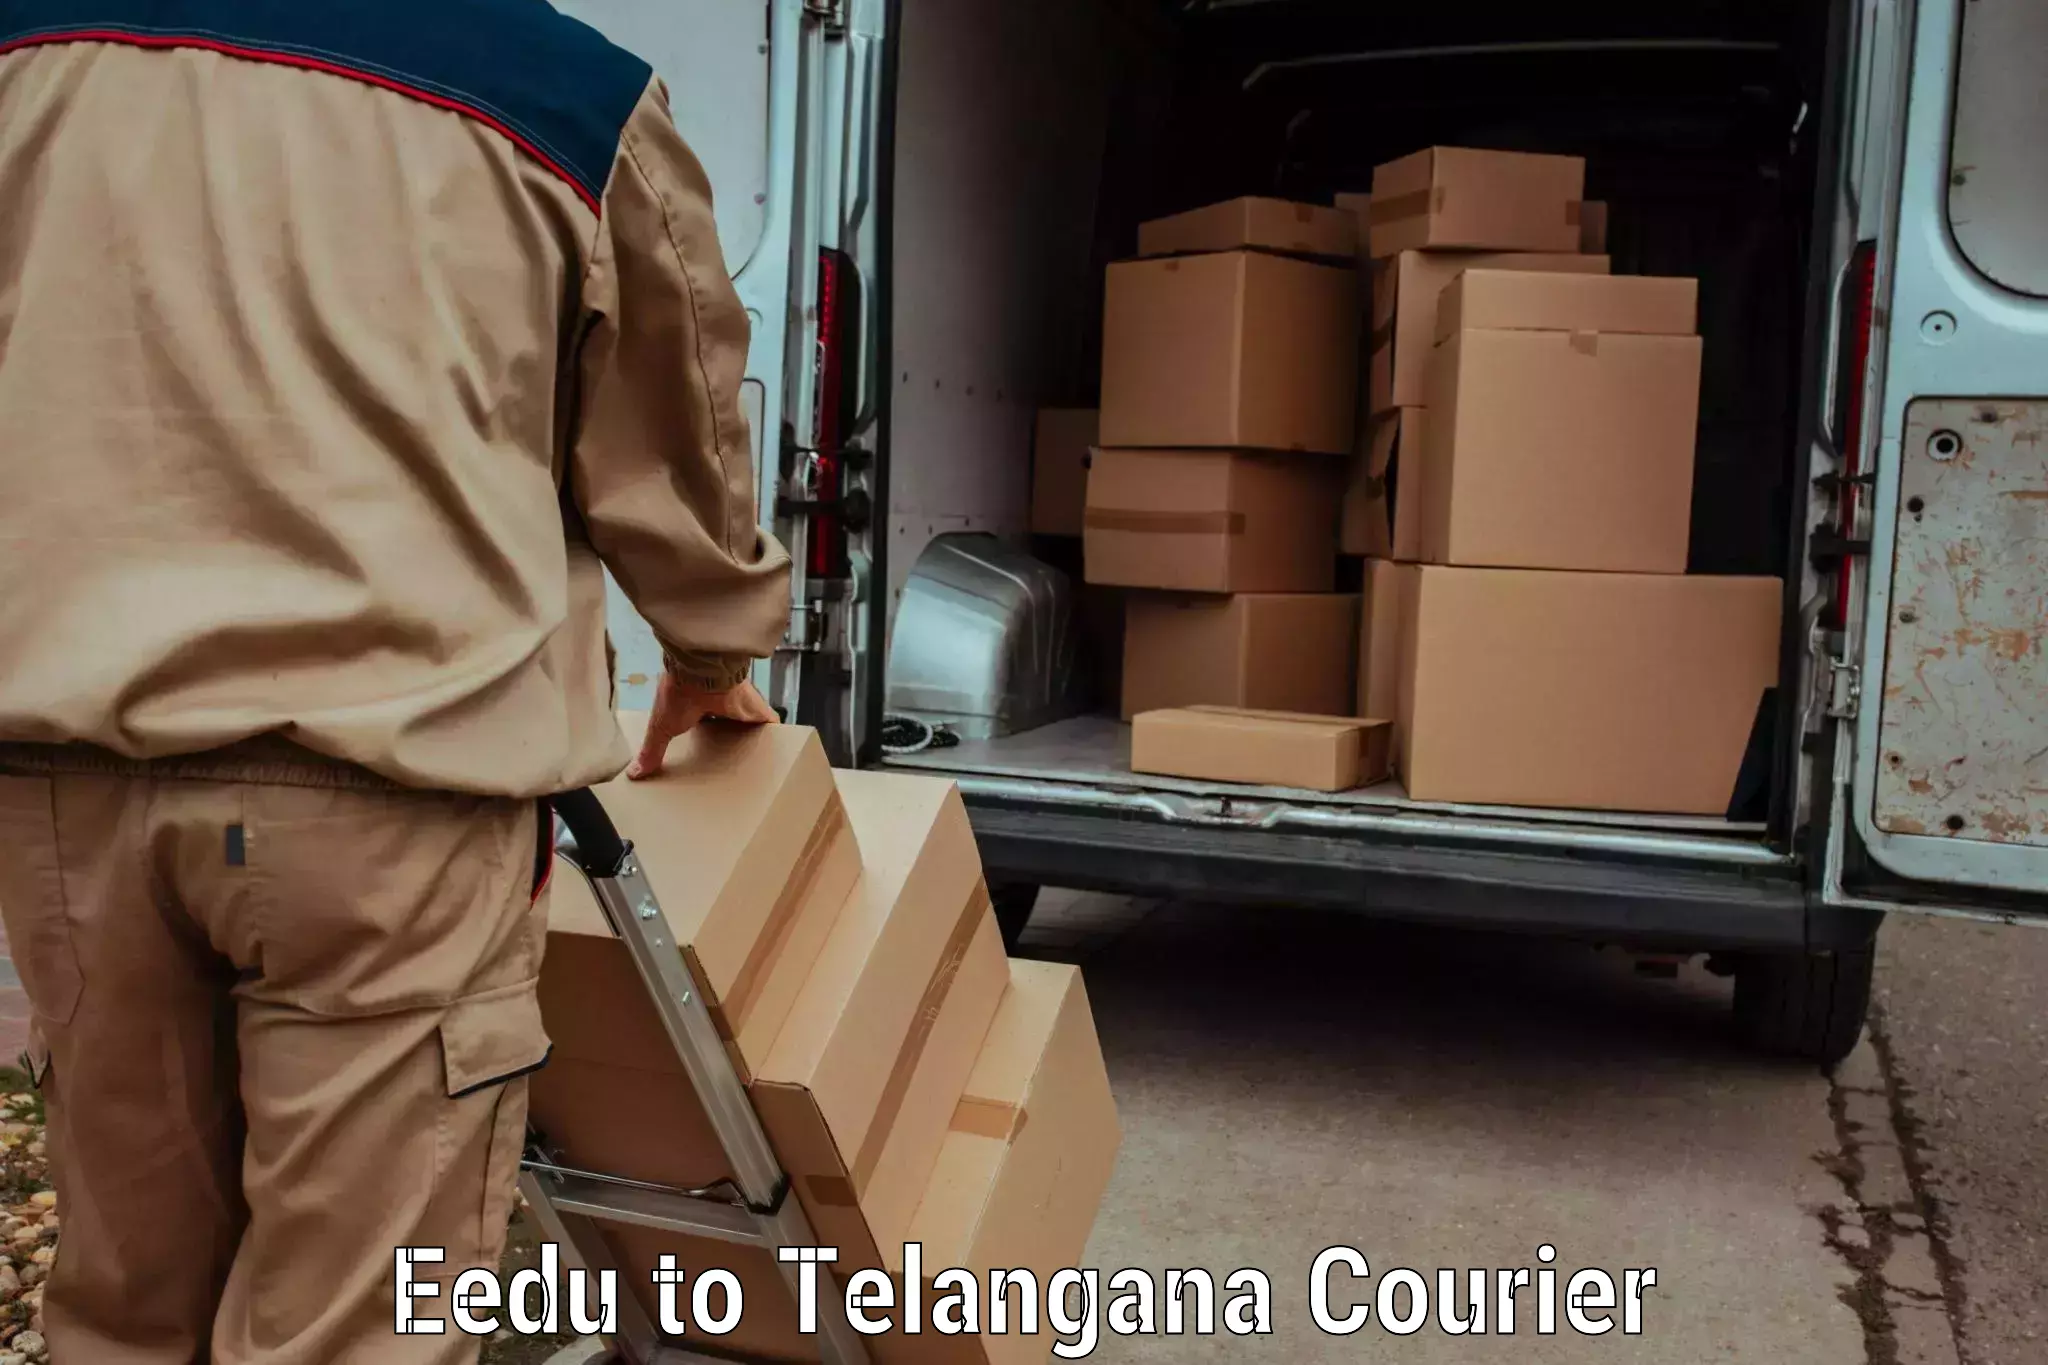 Doorstep delivery service Eedu to Gudur Warangal